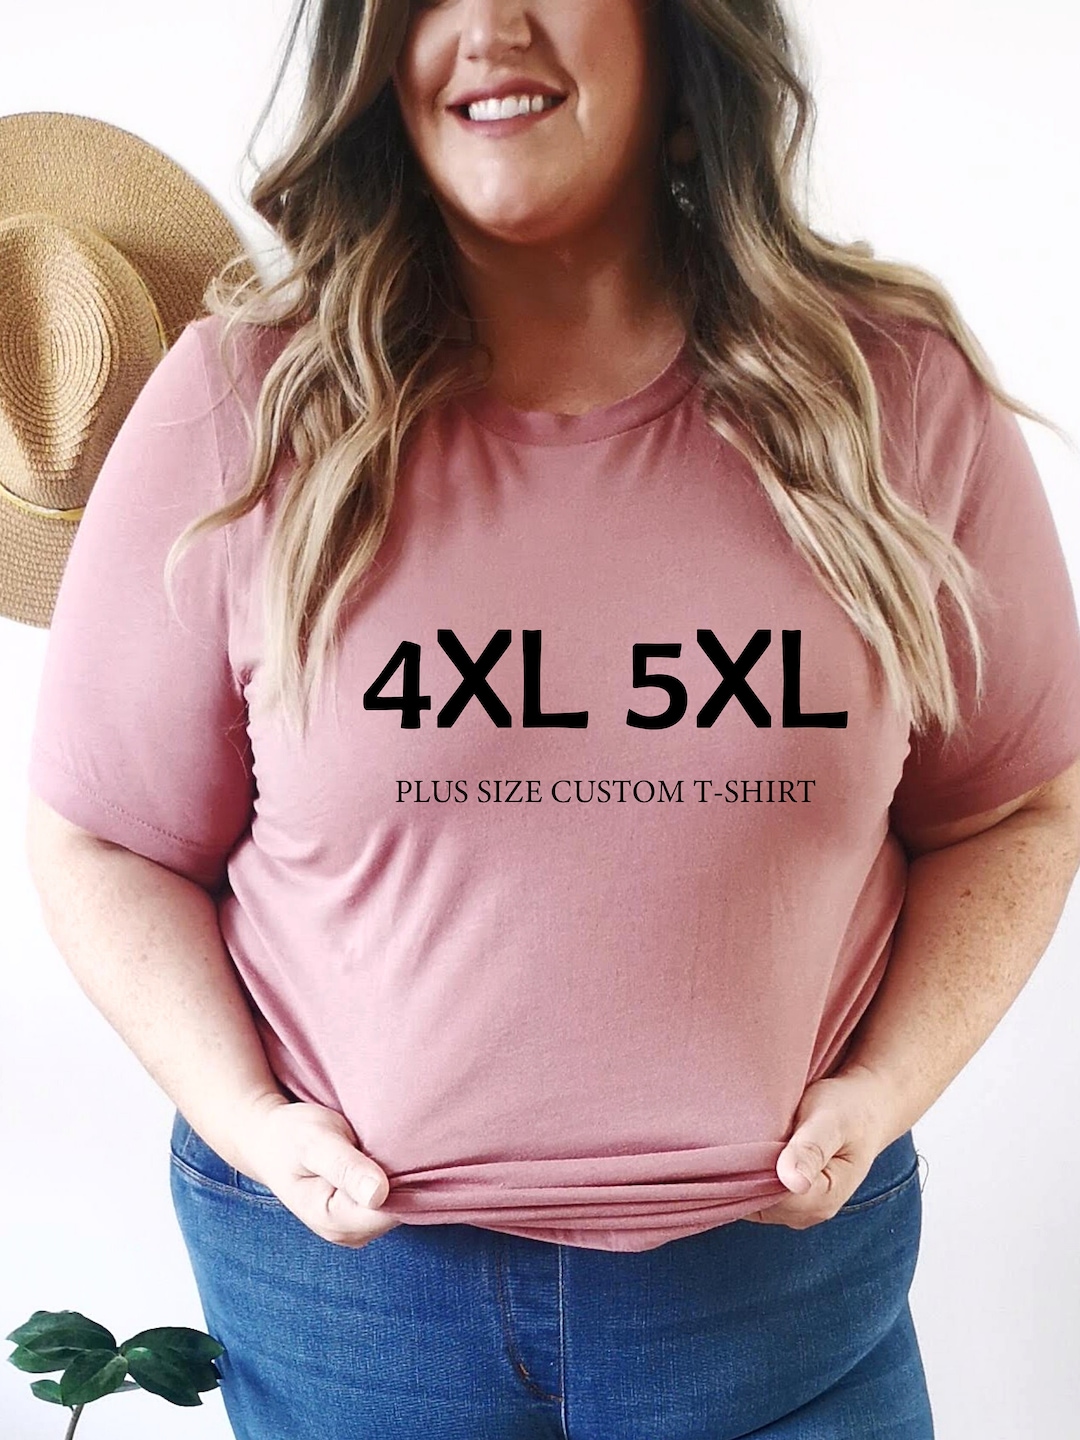 PLUS Size Unisex Tshirt, 2XL 3XL 4XL 5XL Custom Plus Size T-shirts, Custom  Tee, Custom Shirt for Oversized, Custom Order for Shirt 